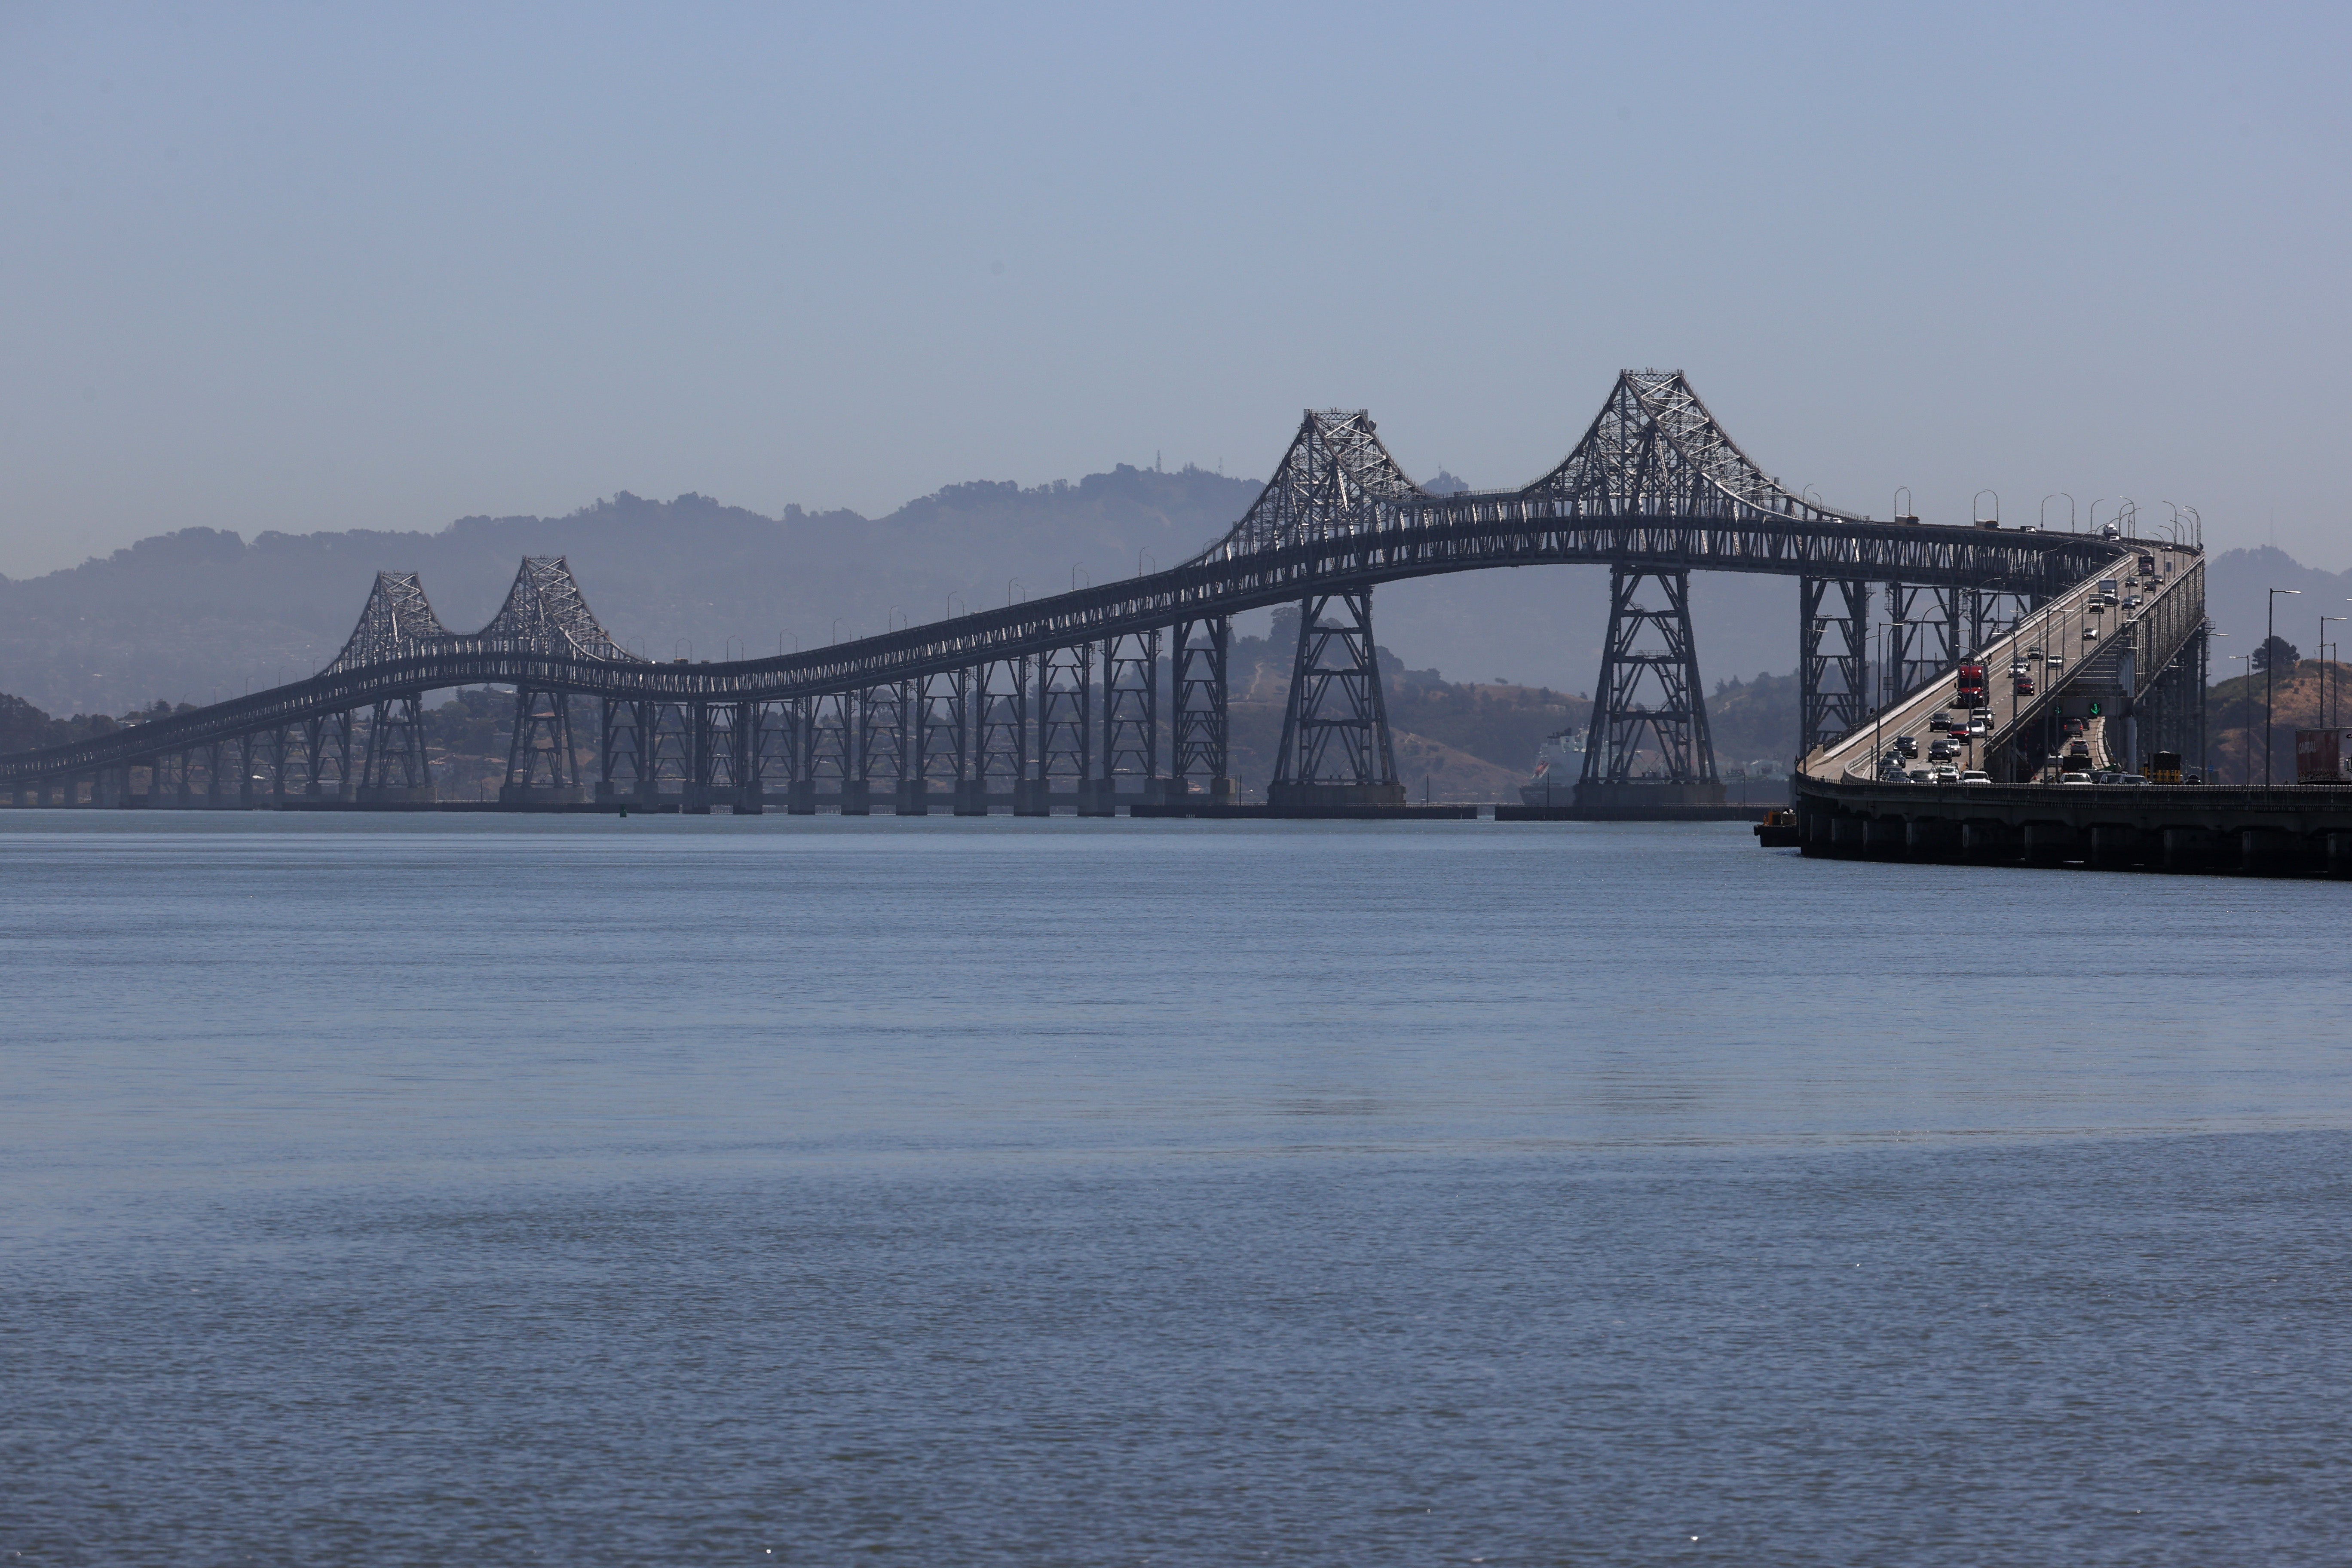 A view of the Richmond-San Rafael Bridge